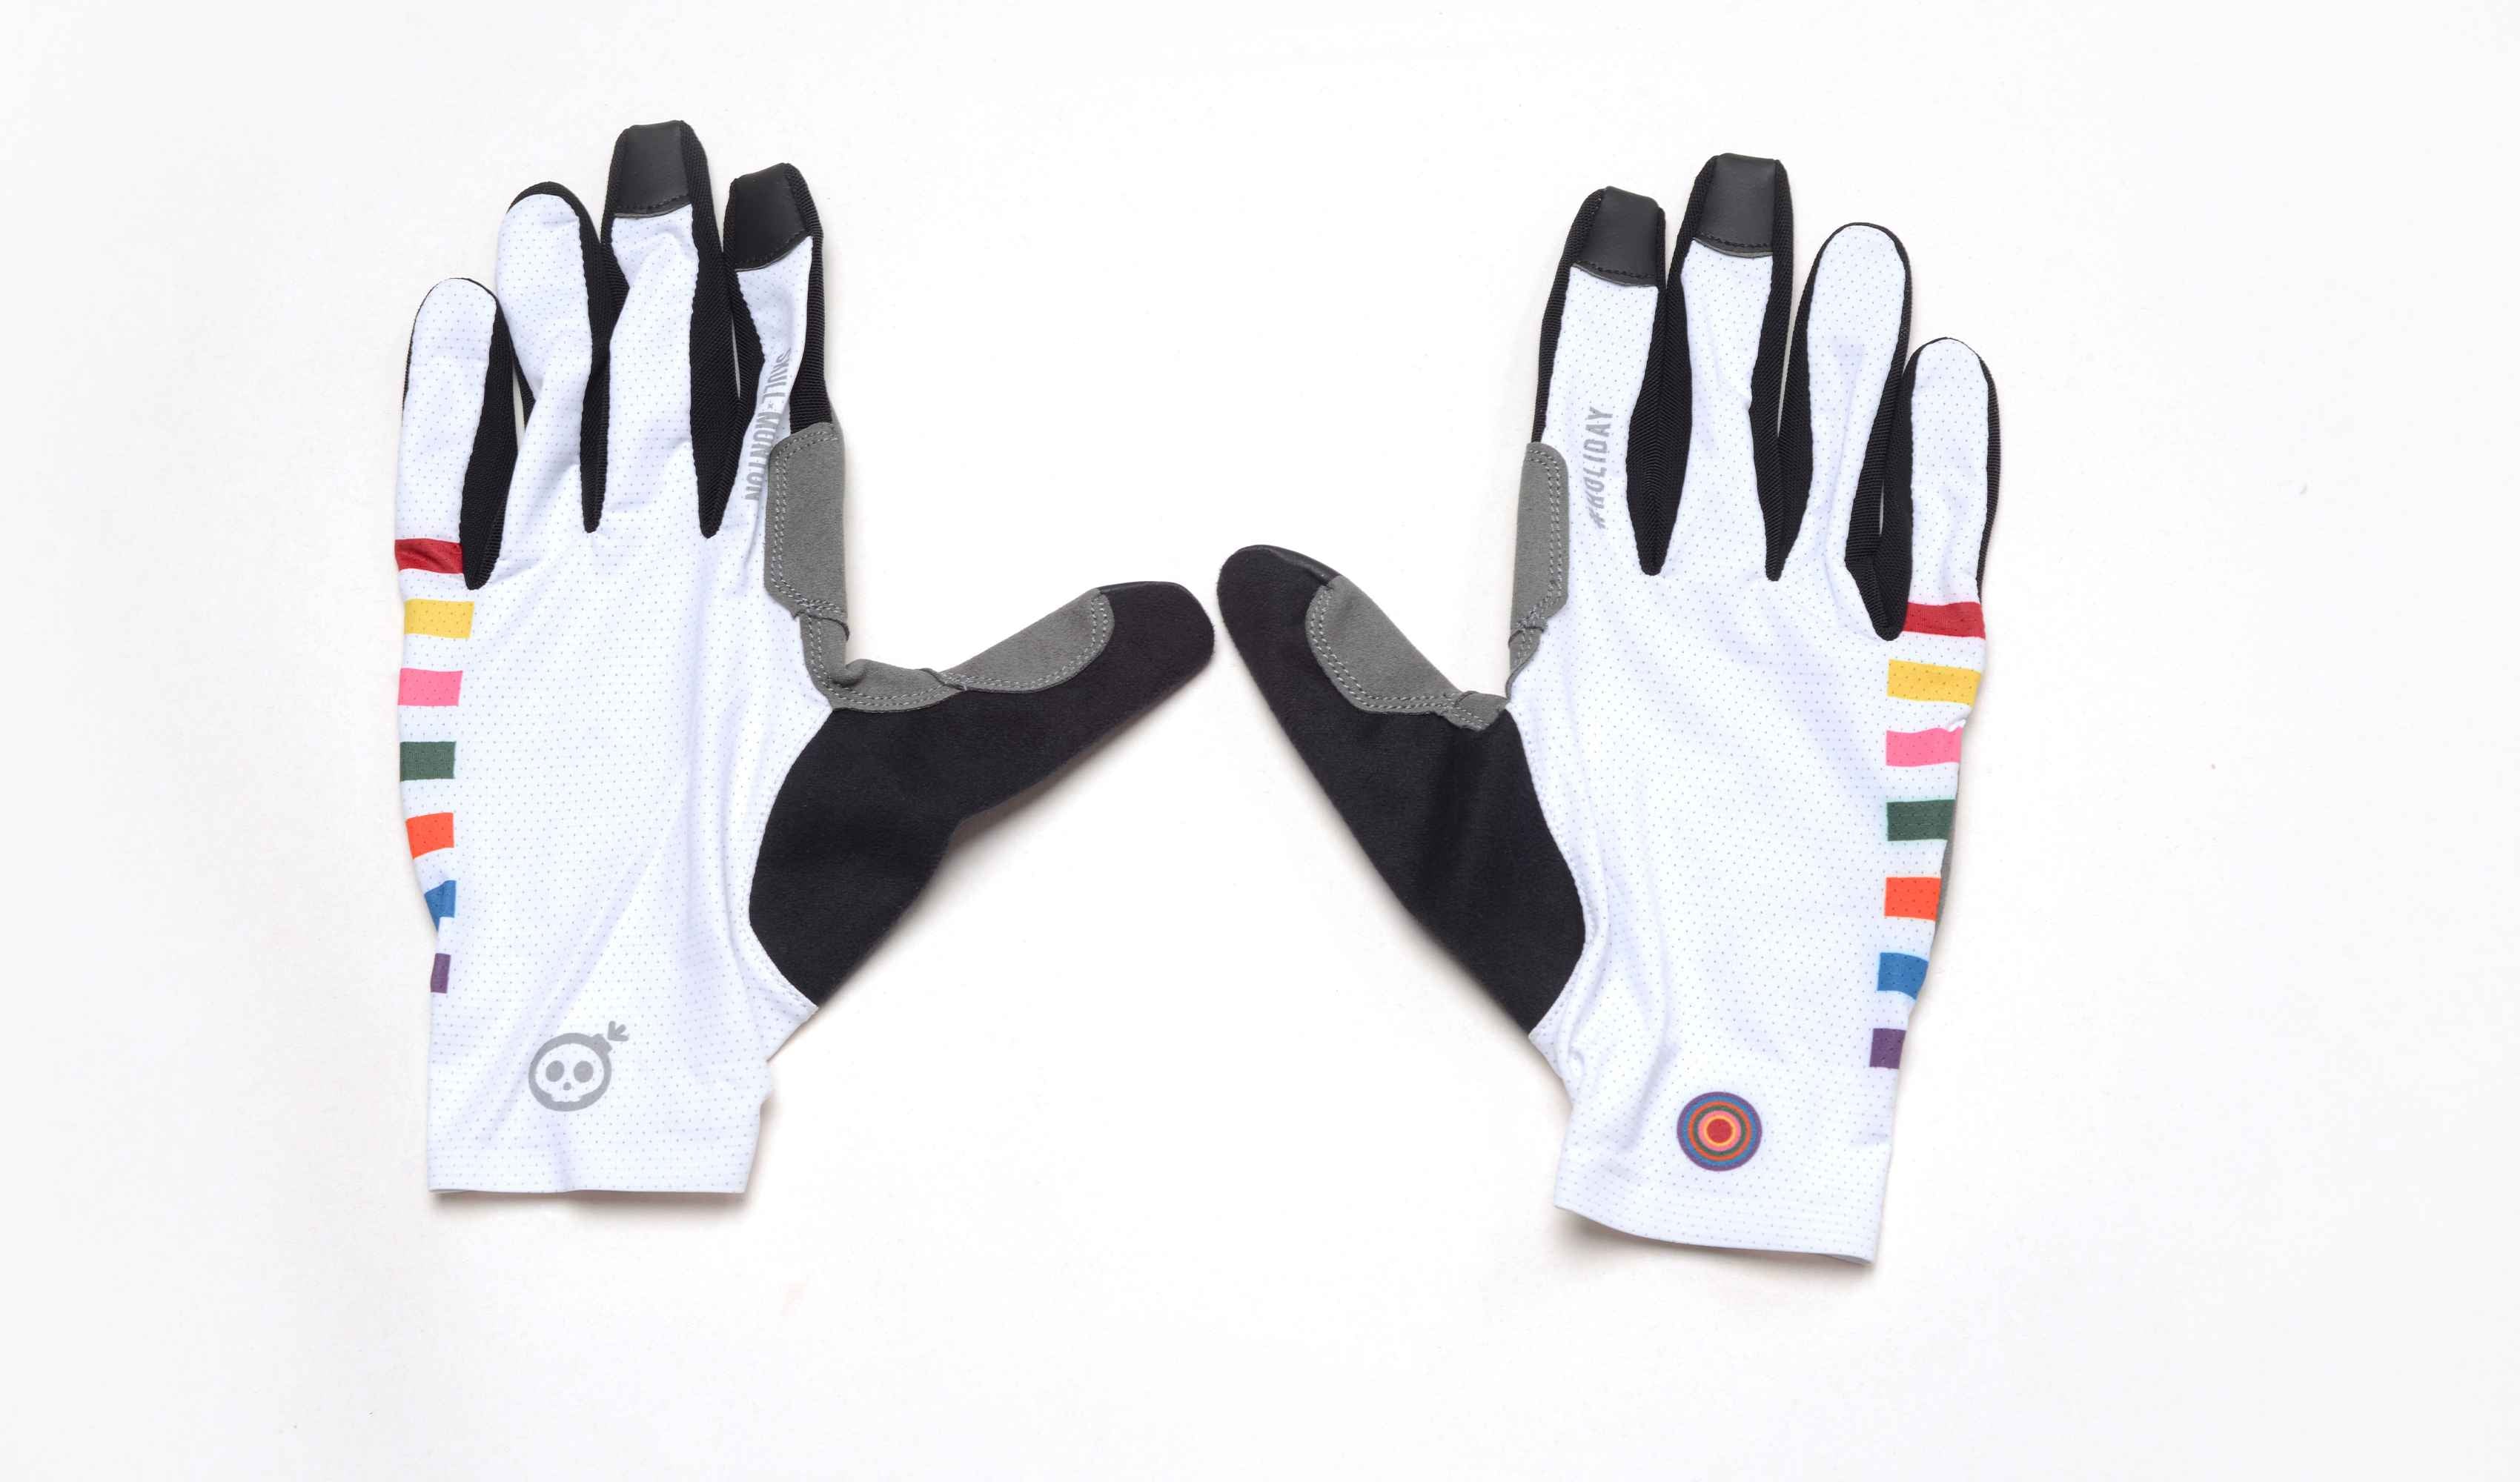 full finger cycling gloves